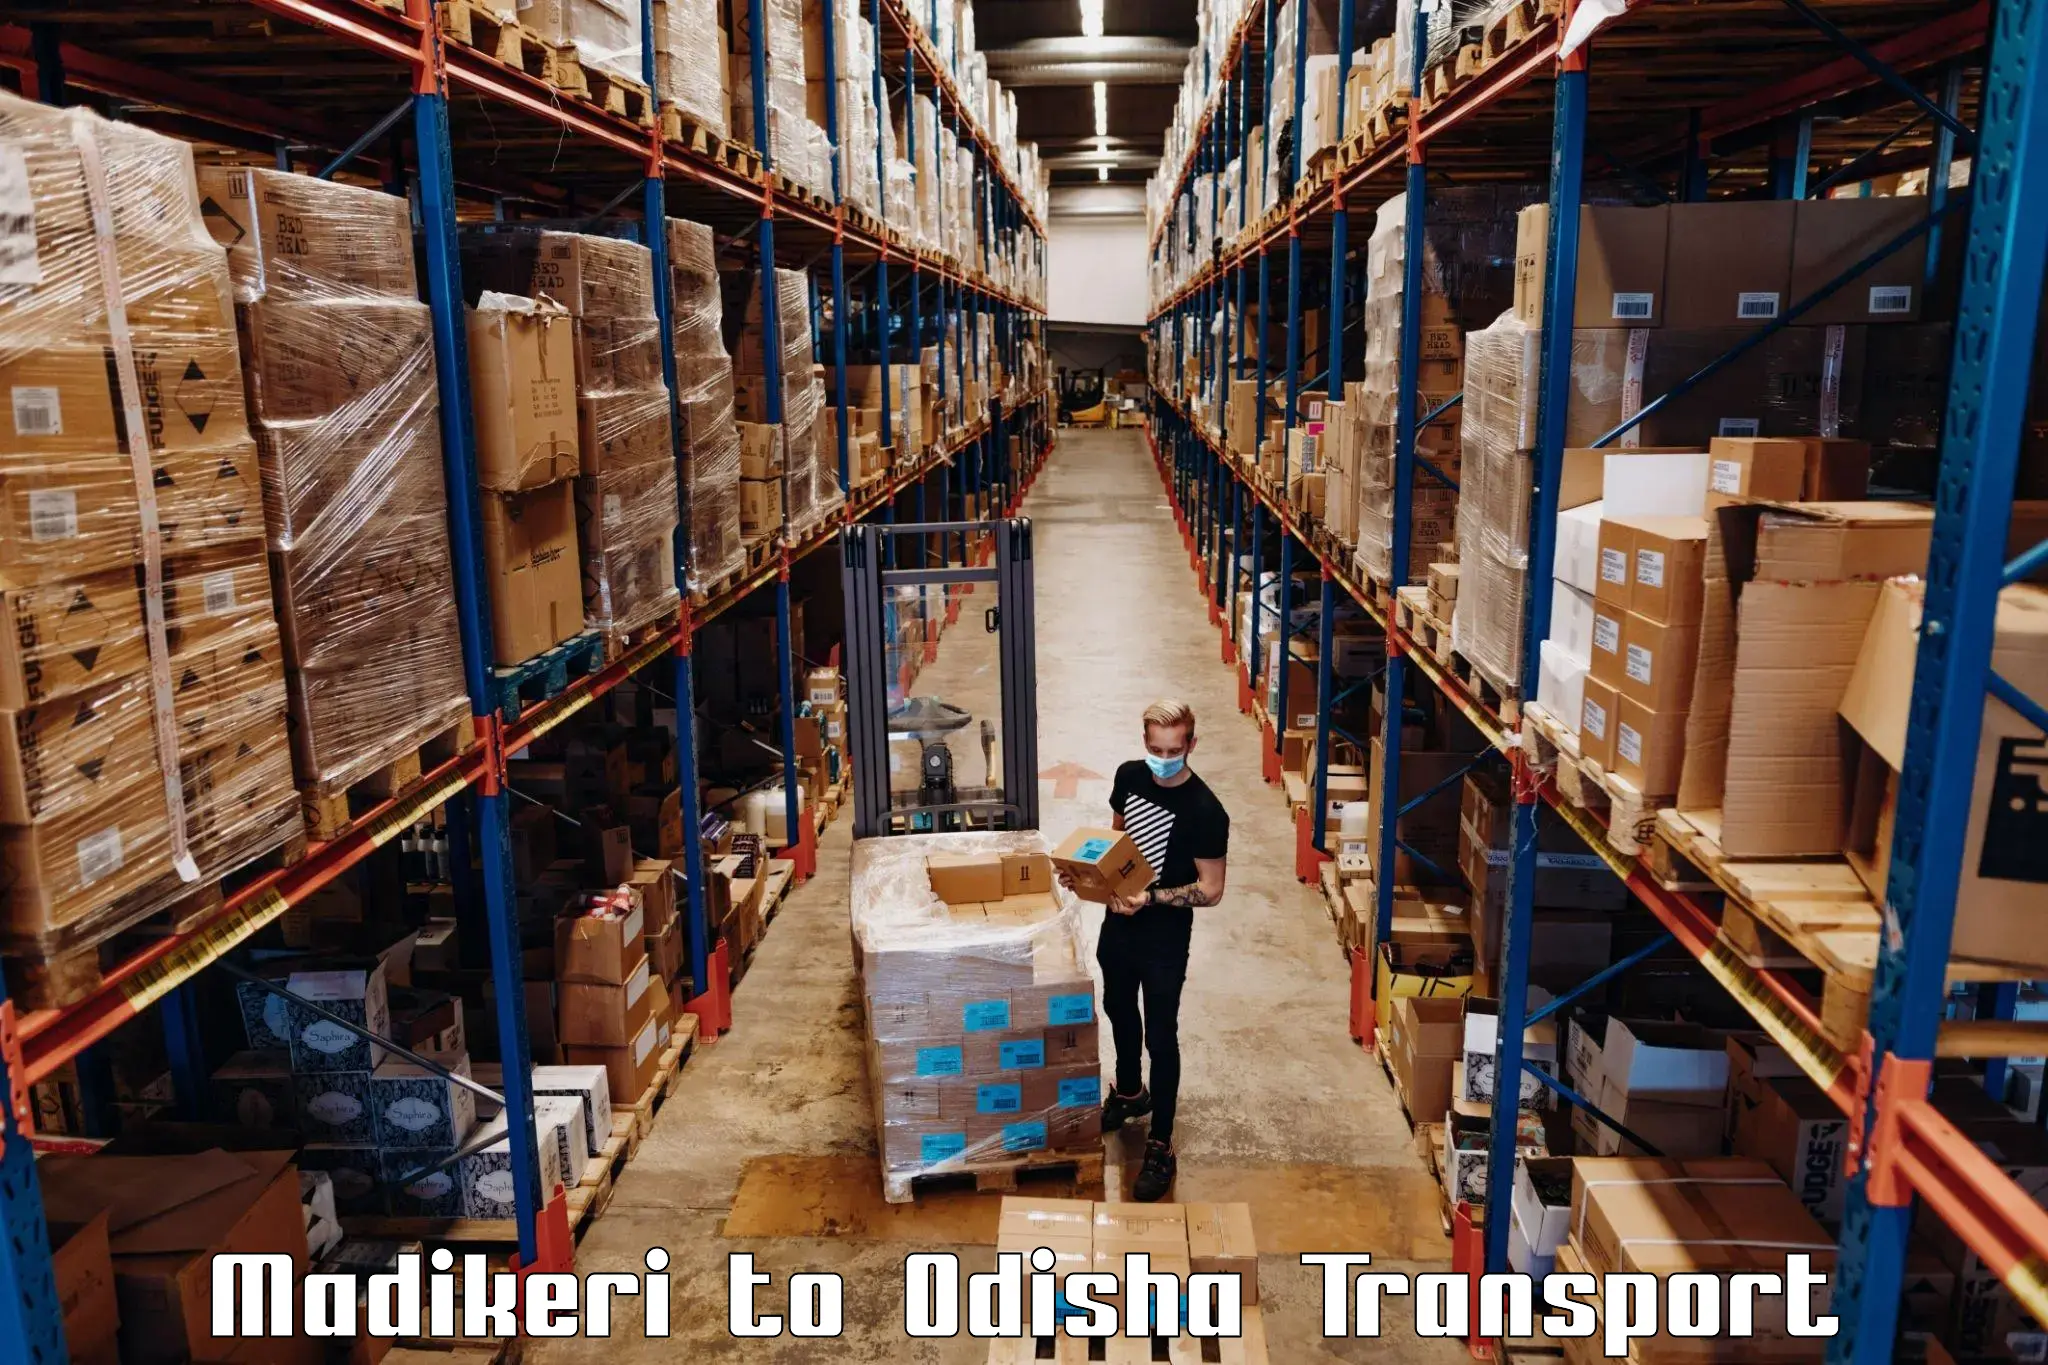 India truck logistics services Madikeri to Gunupur